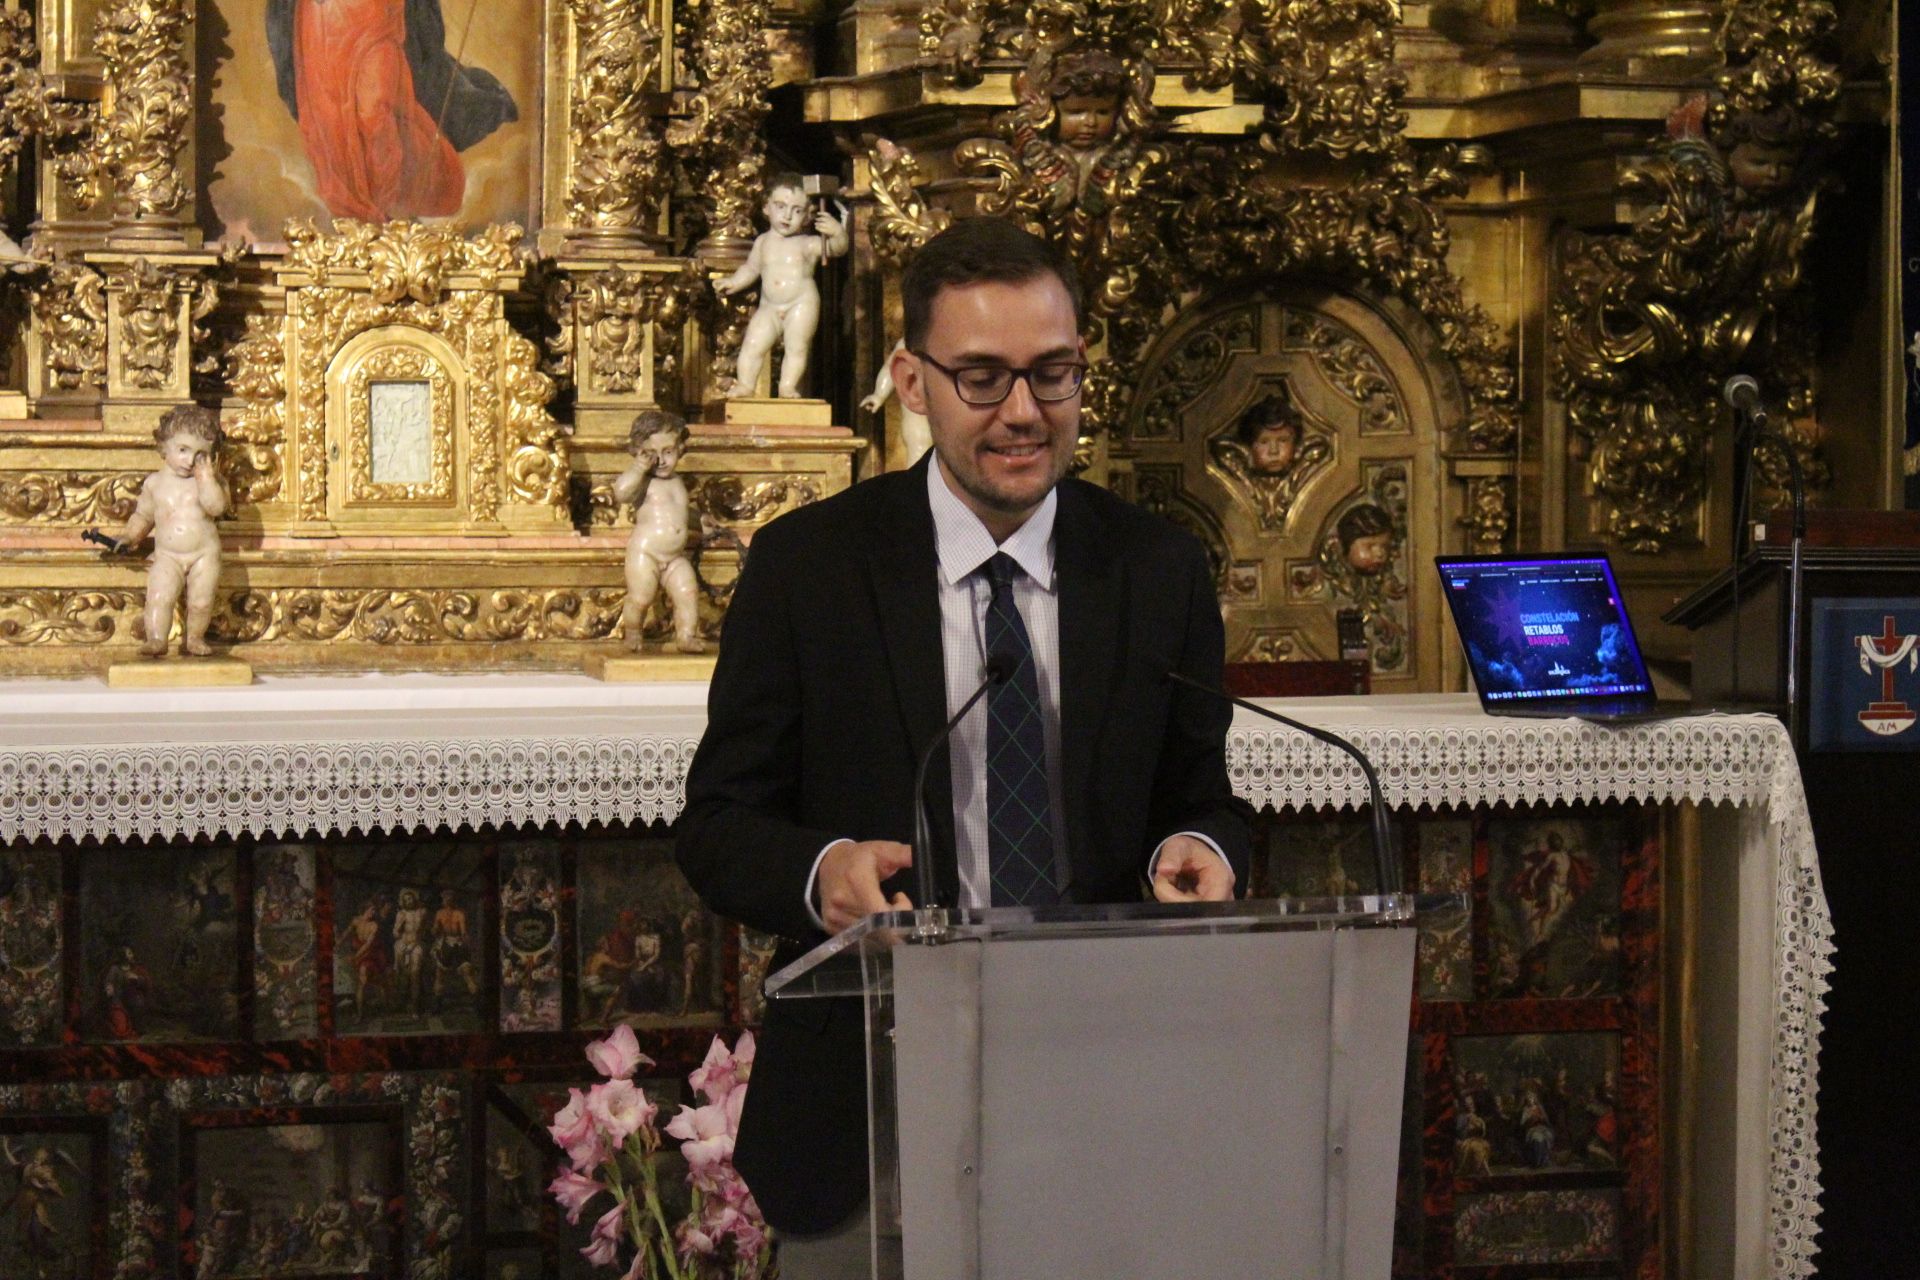 Presentación de la nueva propuesta turística "Salamanca barroca".